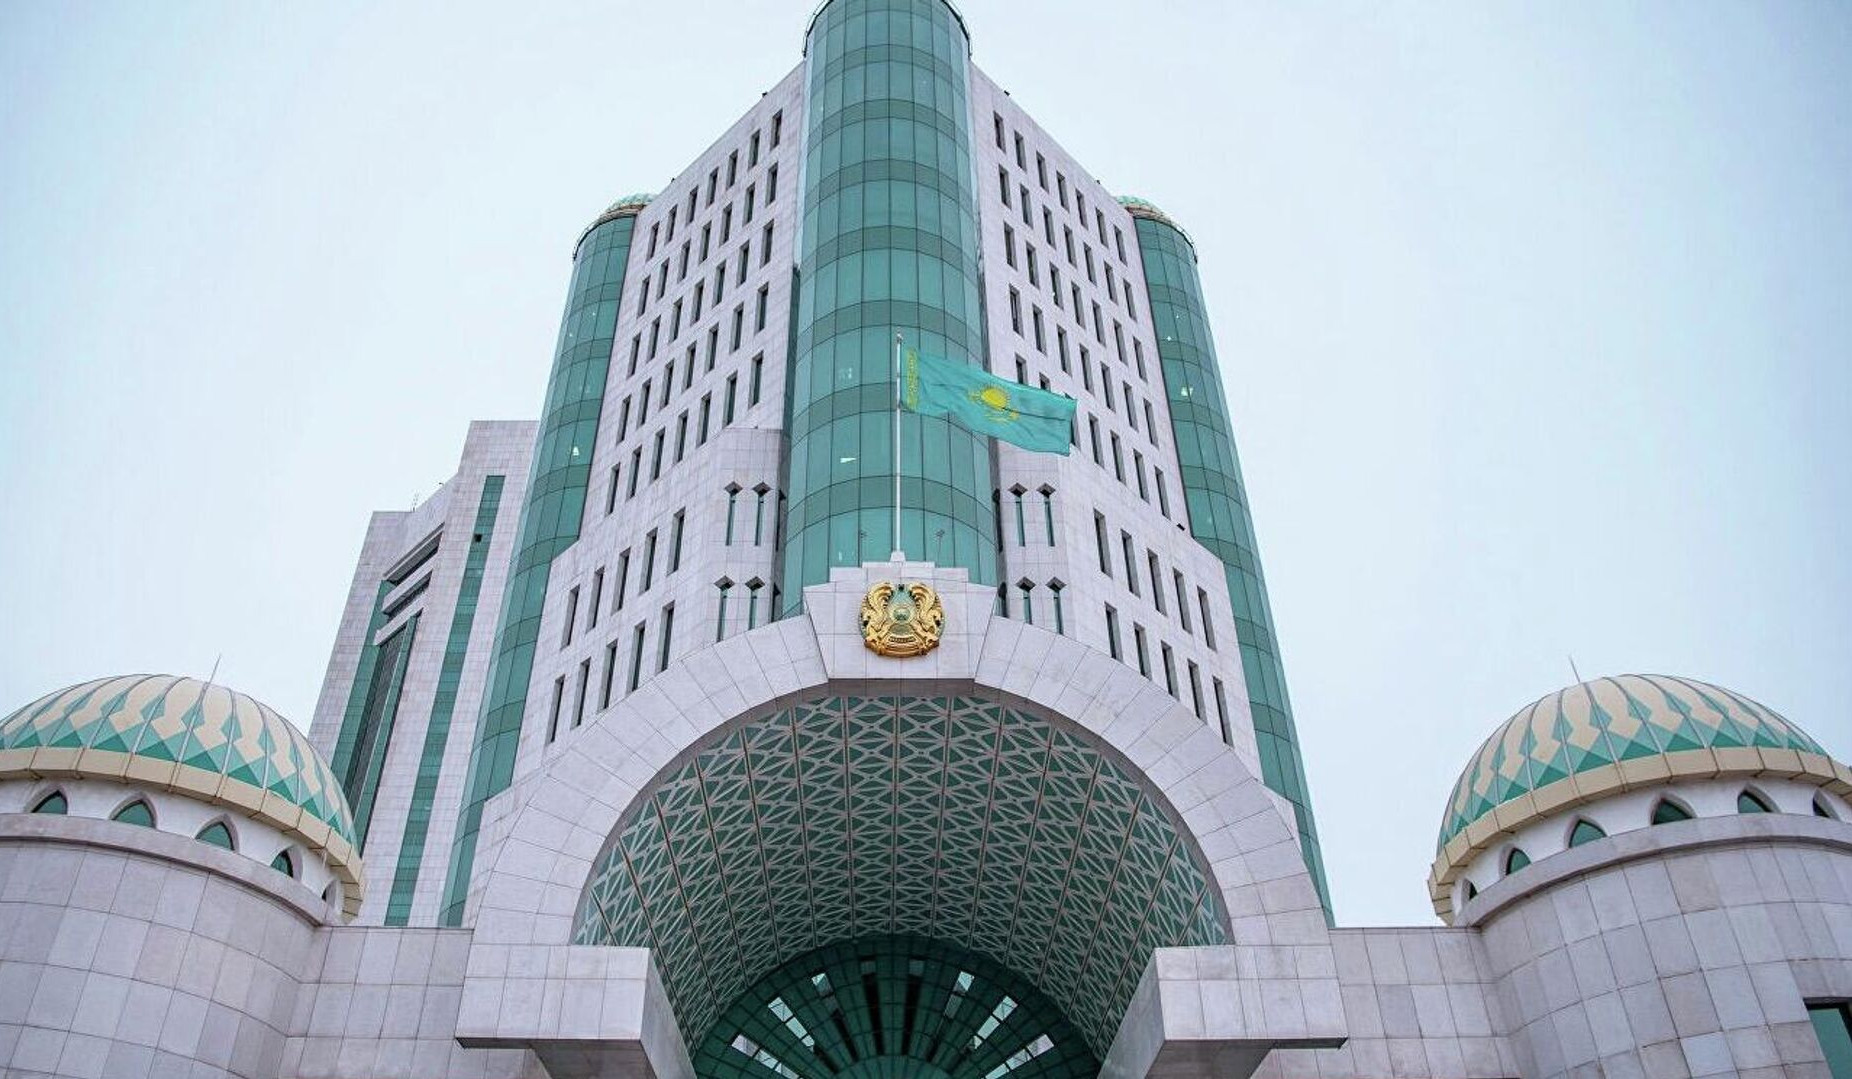 Ղազախստանի խորհրդարանը վավերացրել է Հայաստանի հետ նավթամթերքի մատակարարման մասին համաձայնագիրը